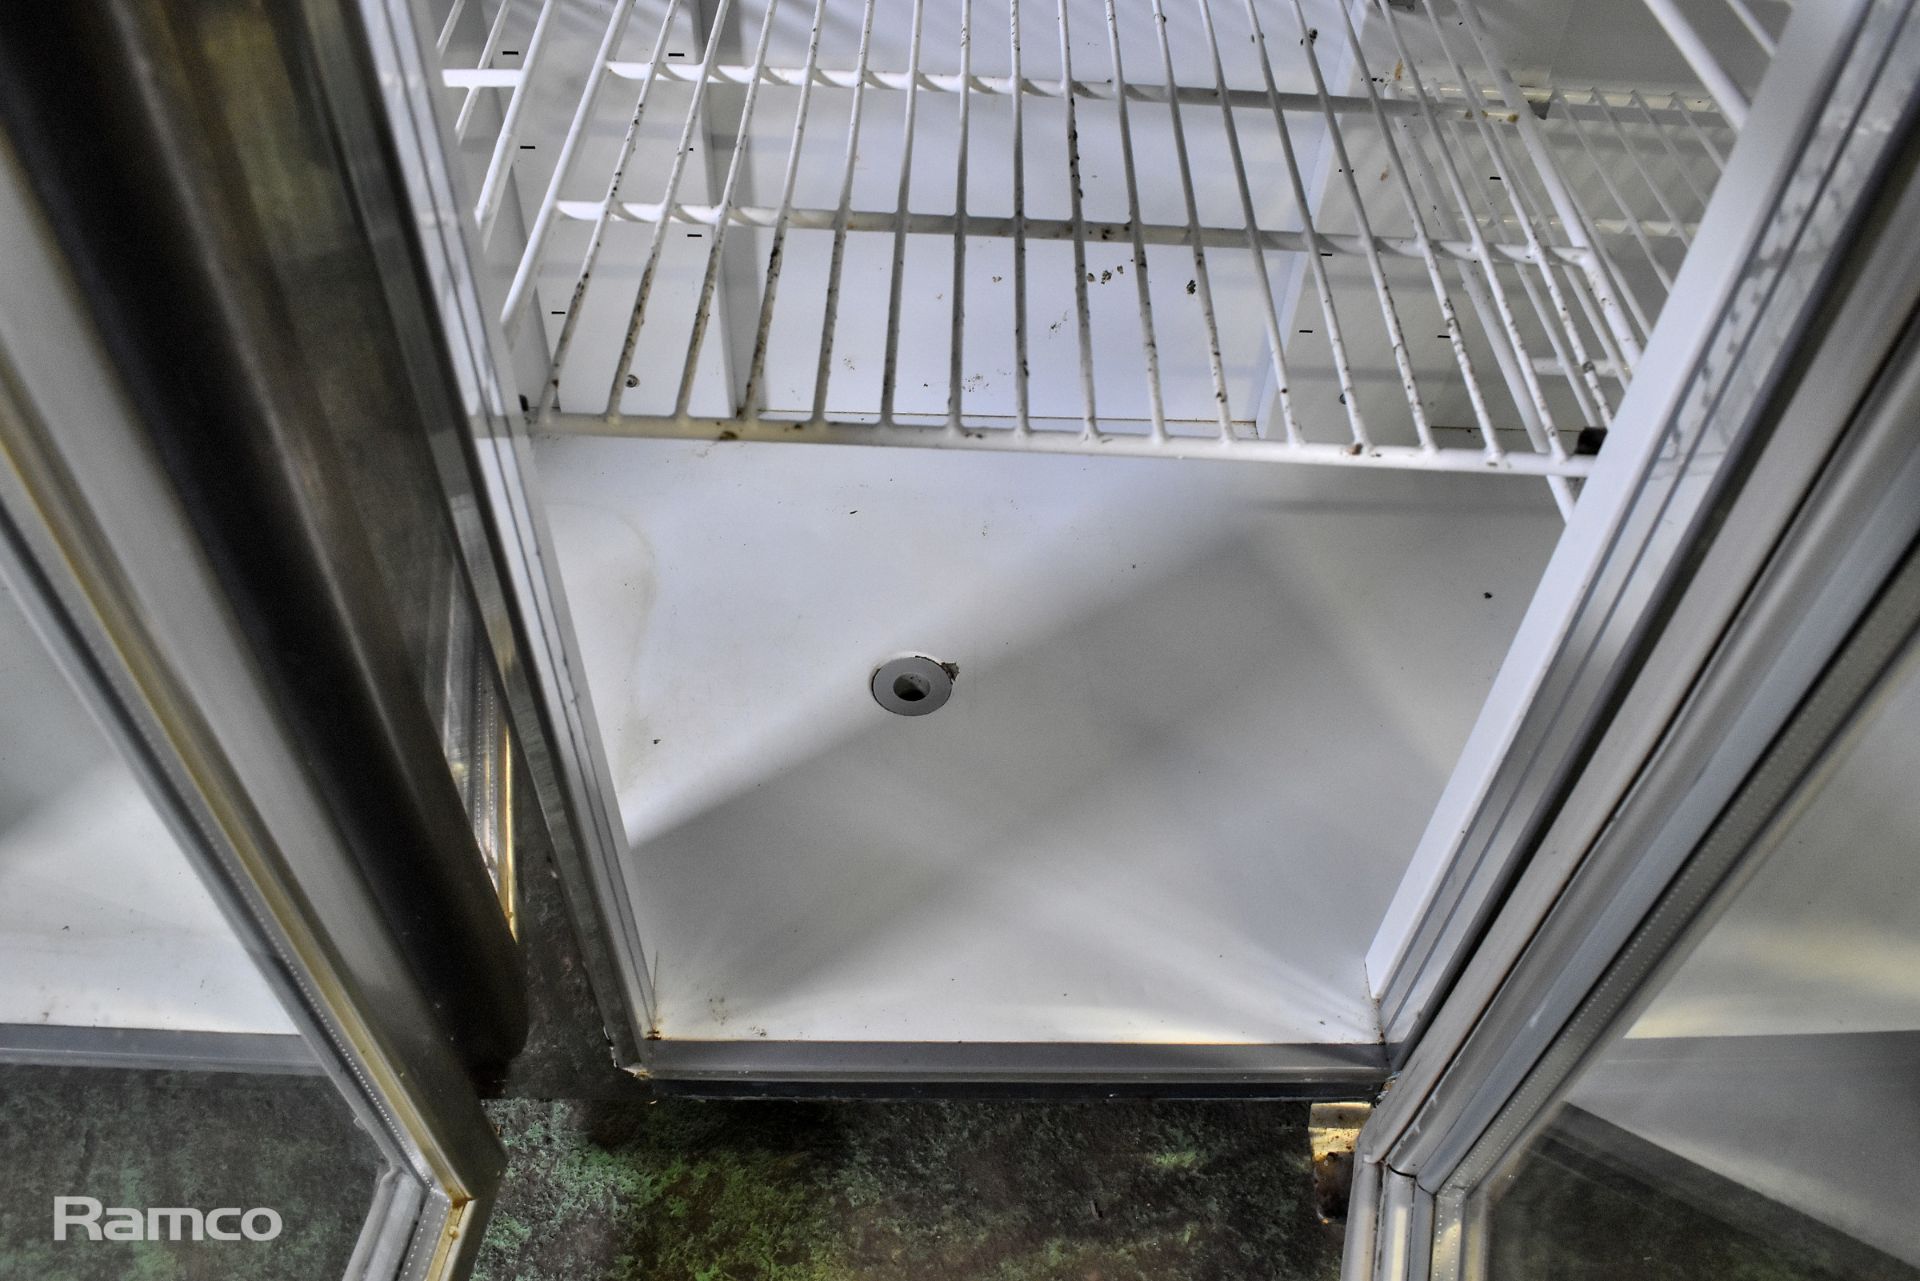 Comersa glass fronted 3 door fridge with stainless steel worktop - Image 8 of 10